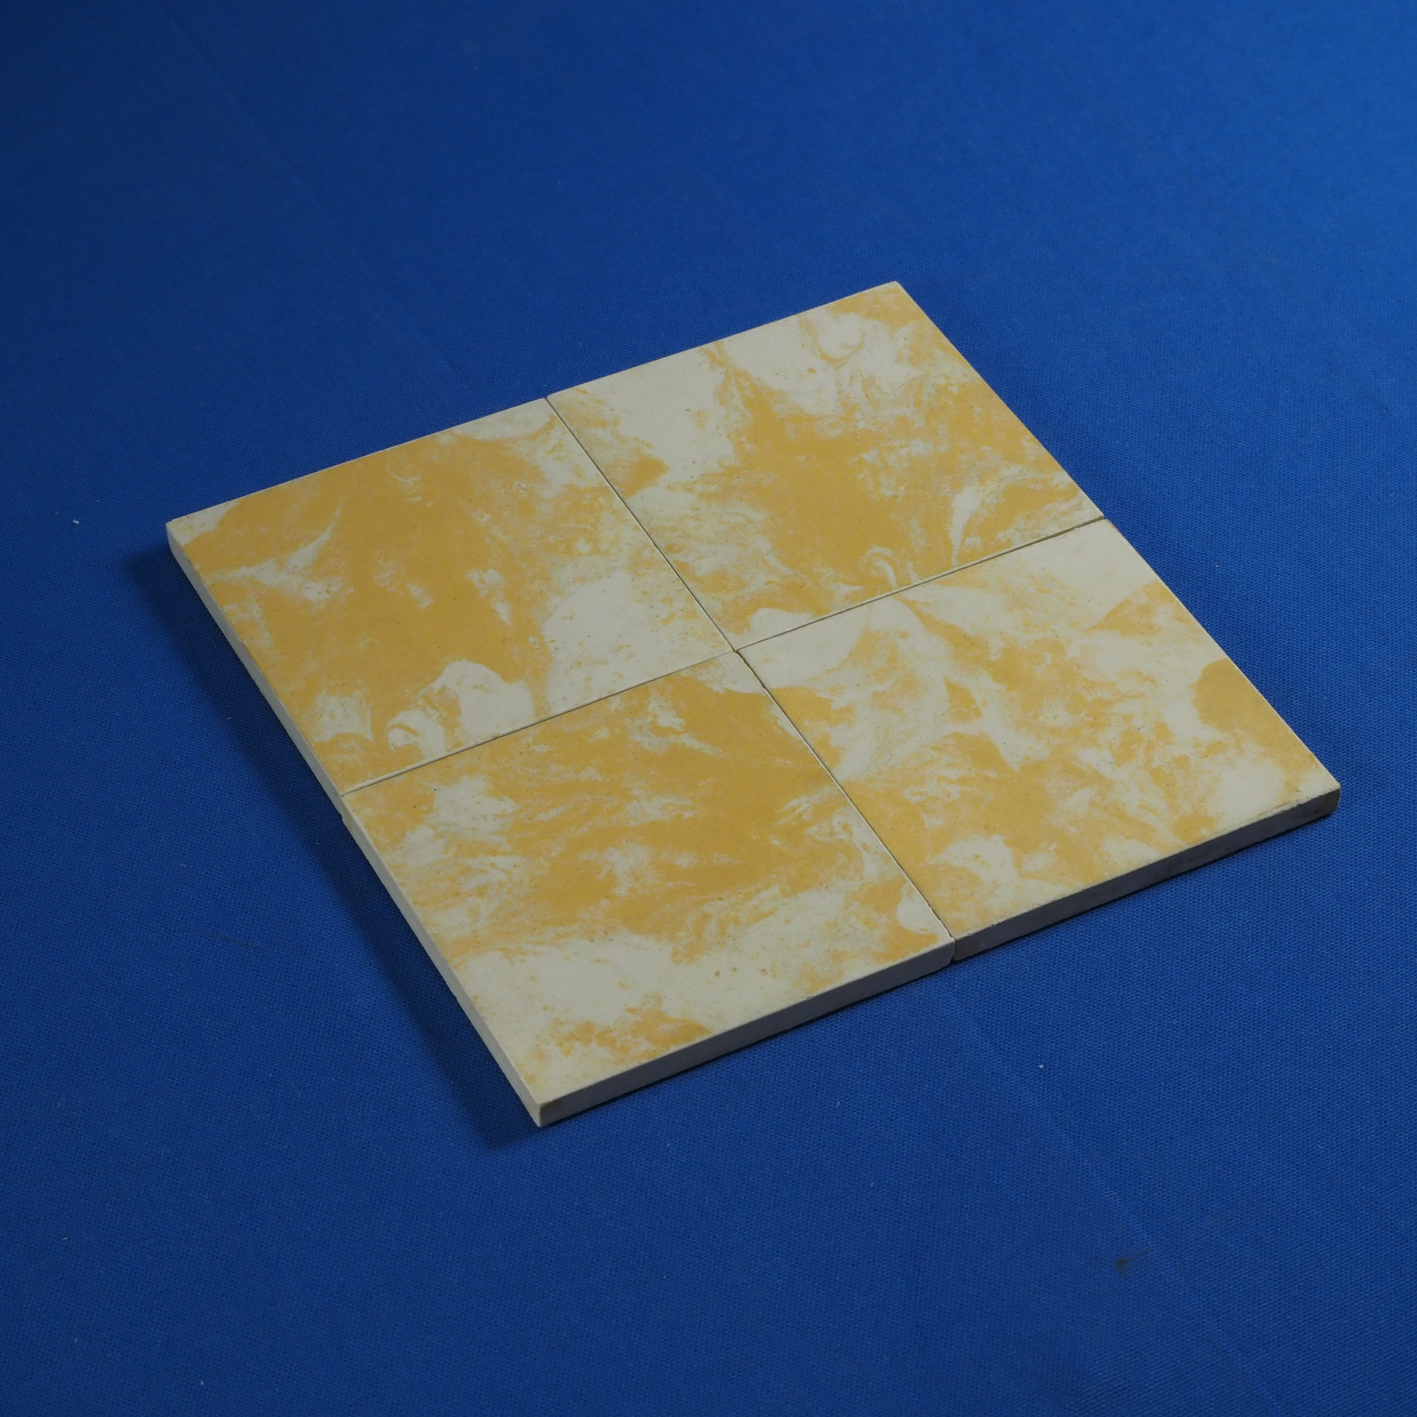 Flamed yellow ceramic tiles by Dekoramik (10 x 10 cm)